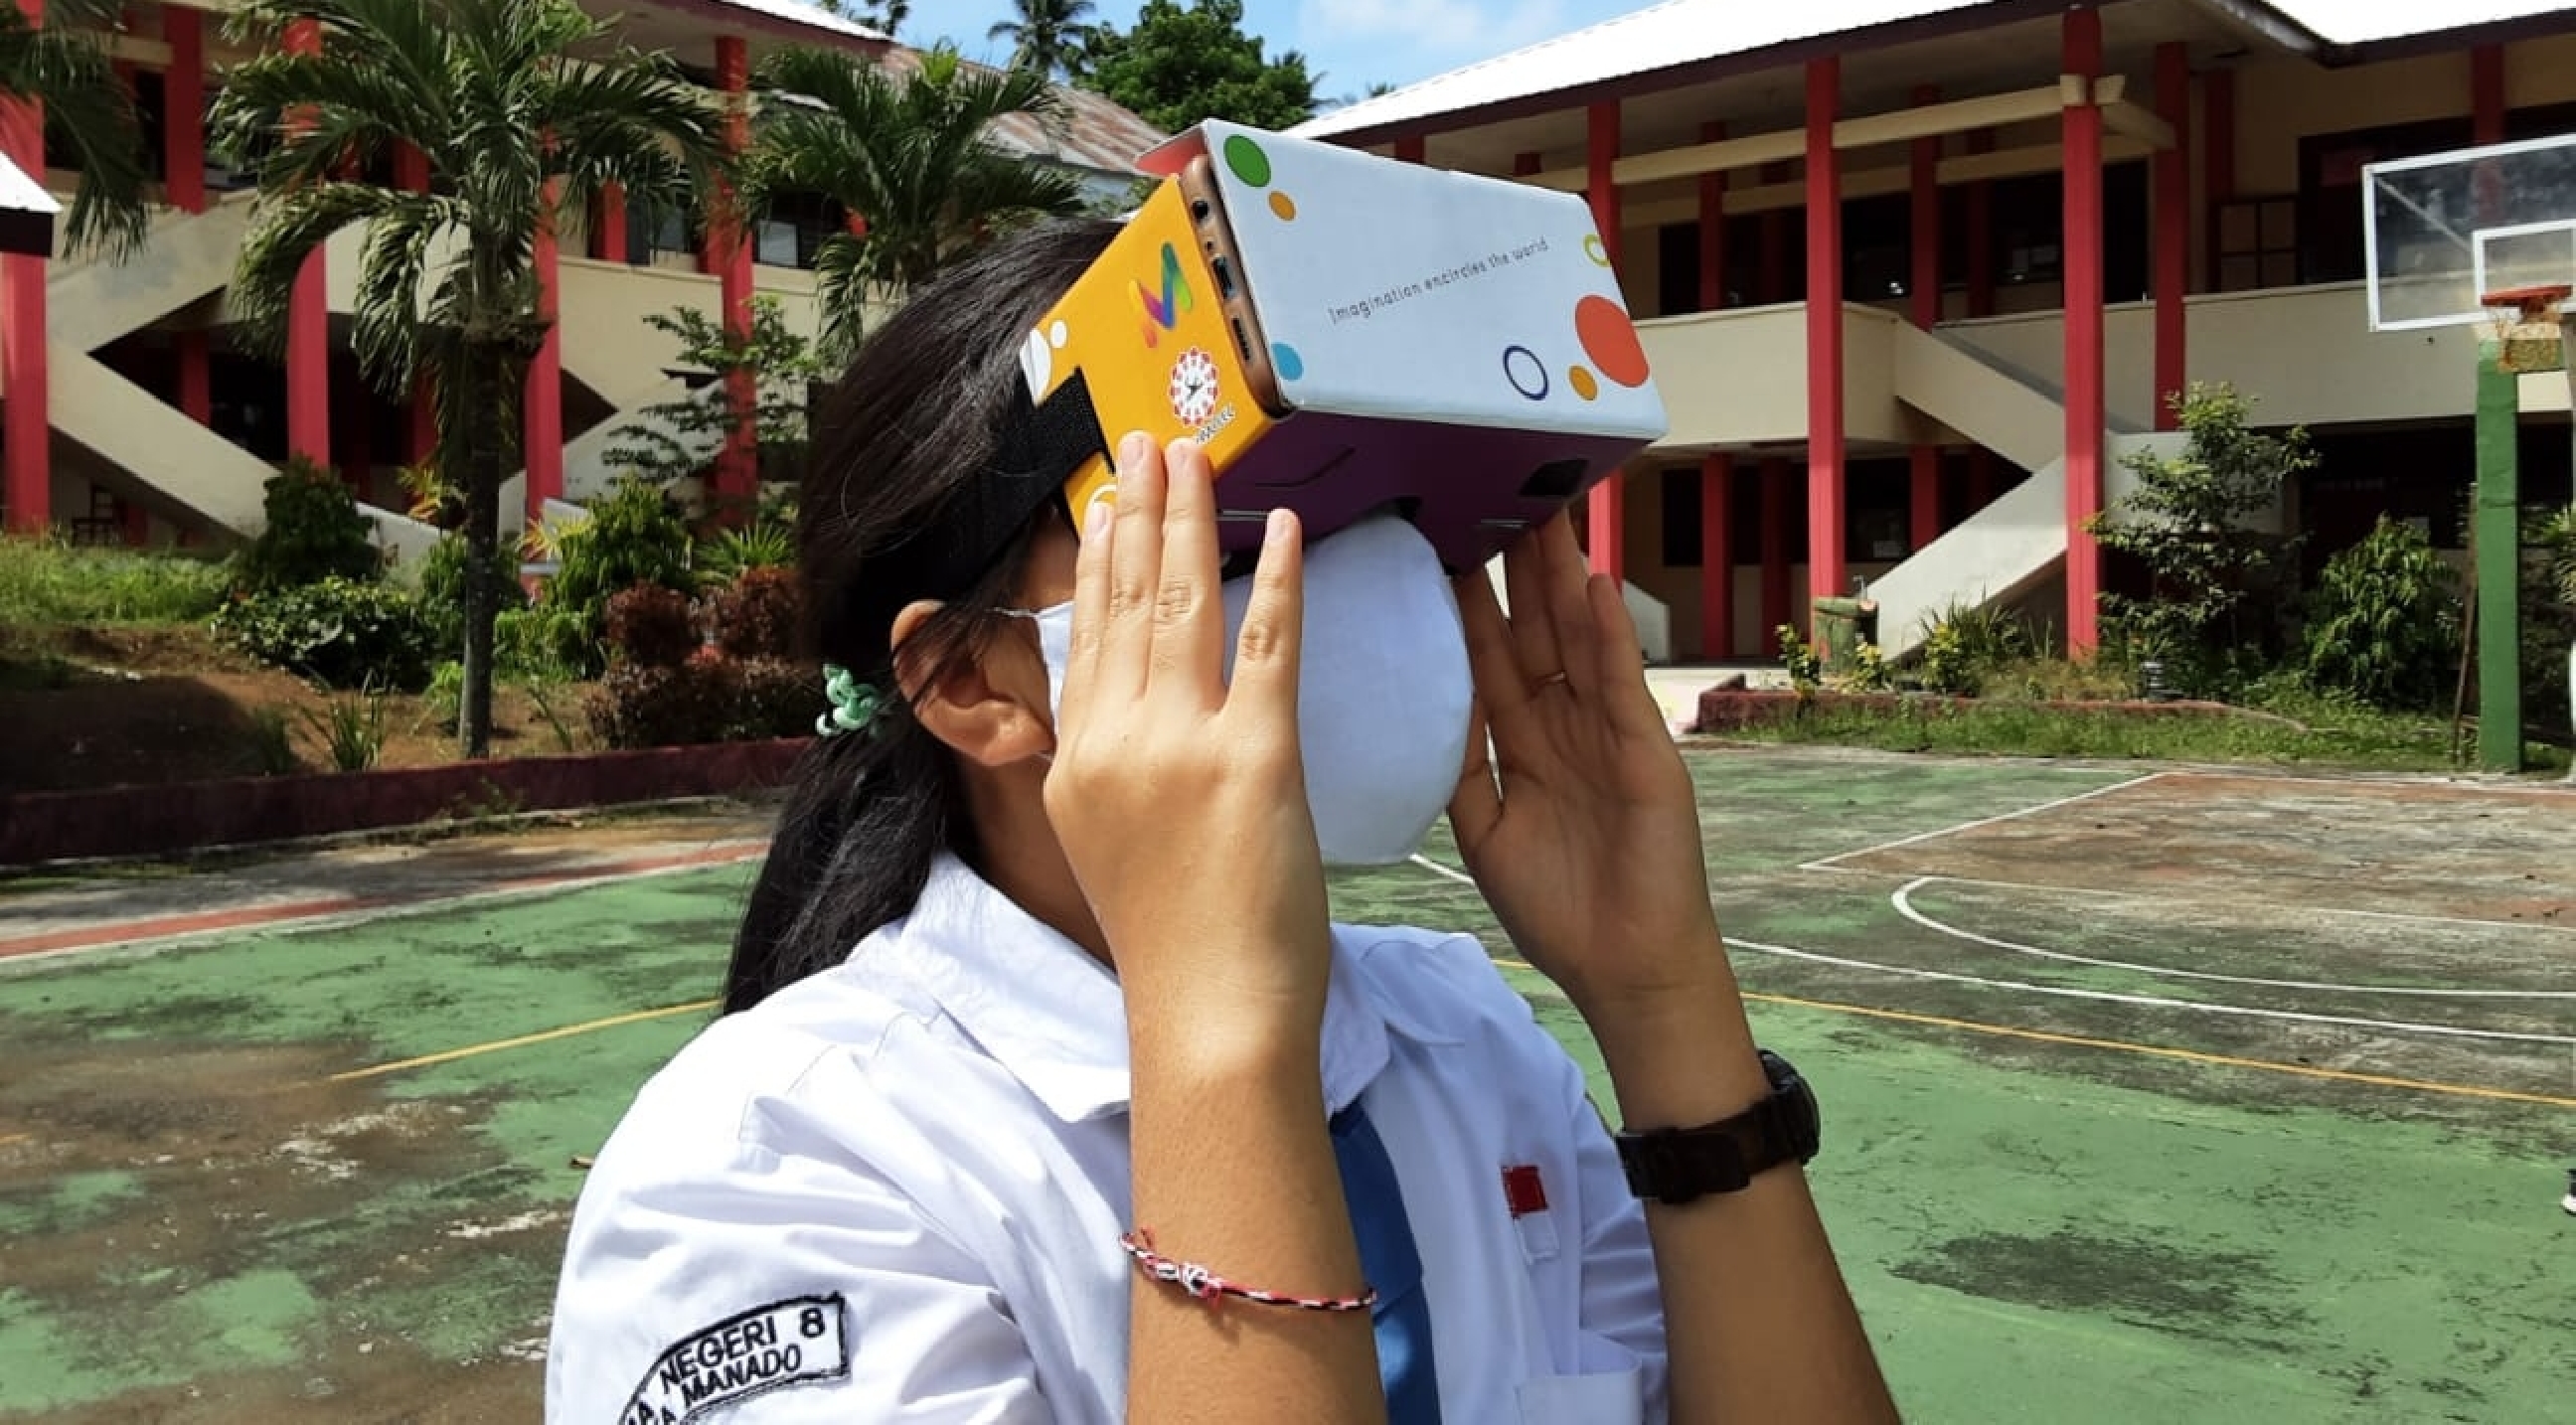 Teknologi pendidikan berbasis VR jadi solusi di era pandemi